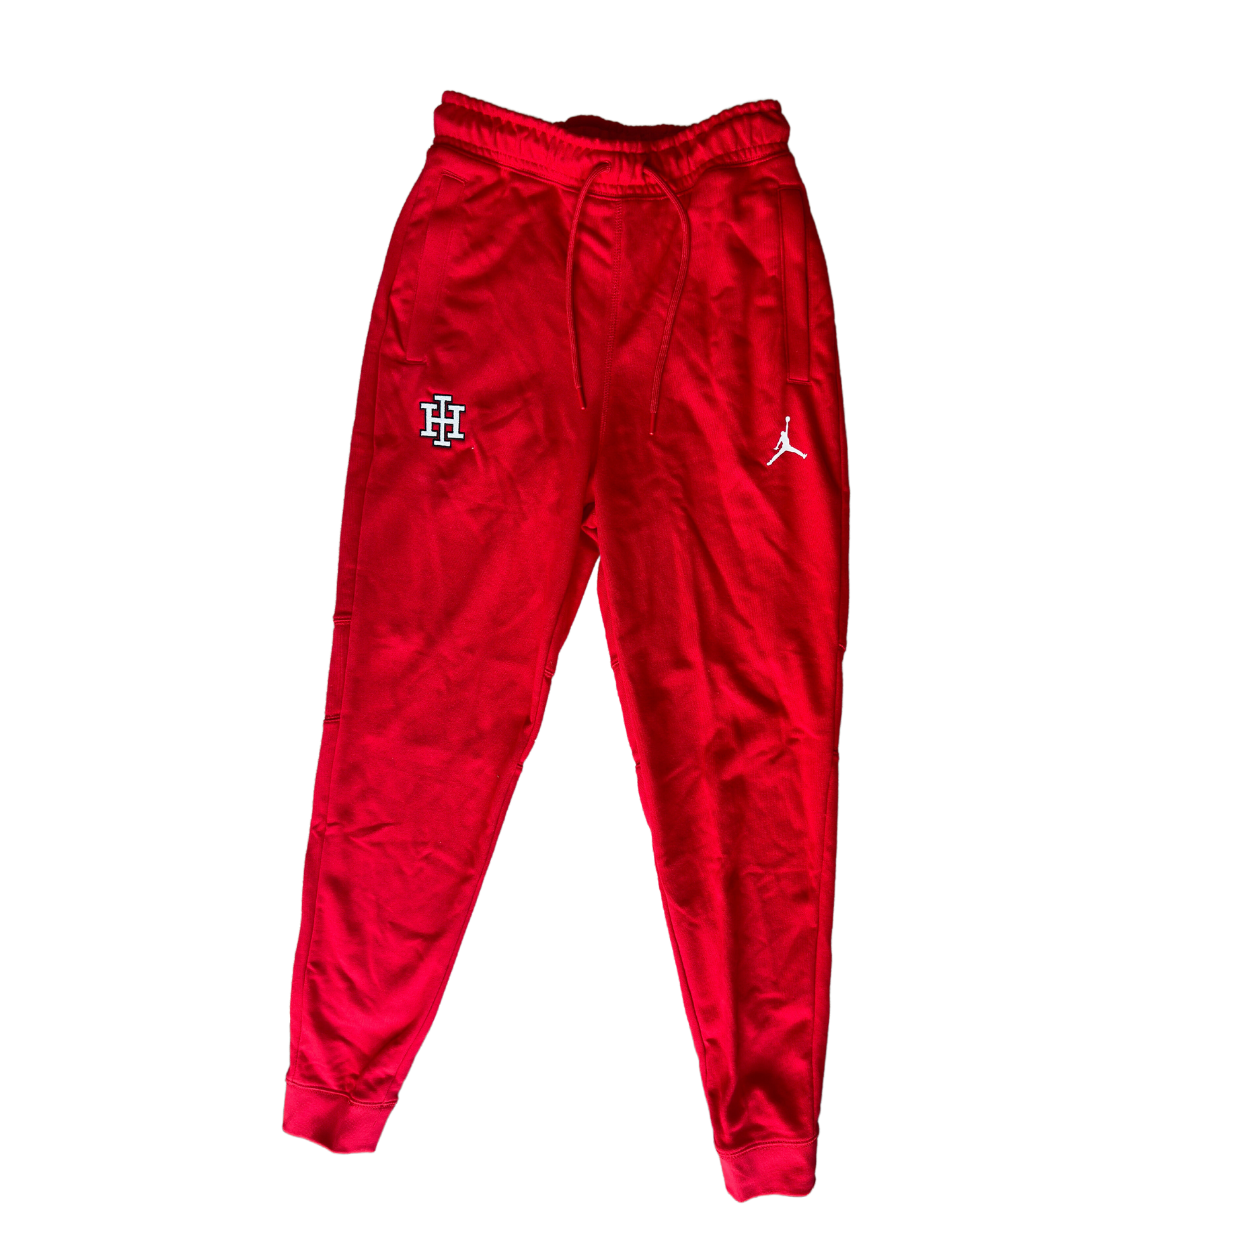 Jordan Men's Sweatpants - Red